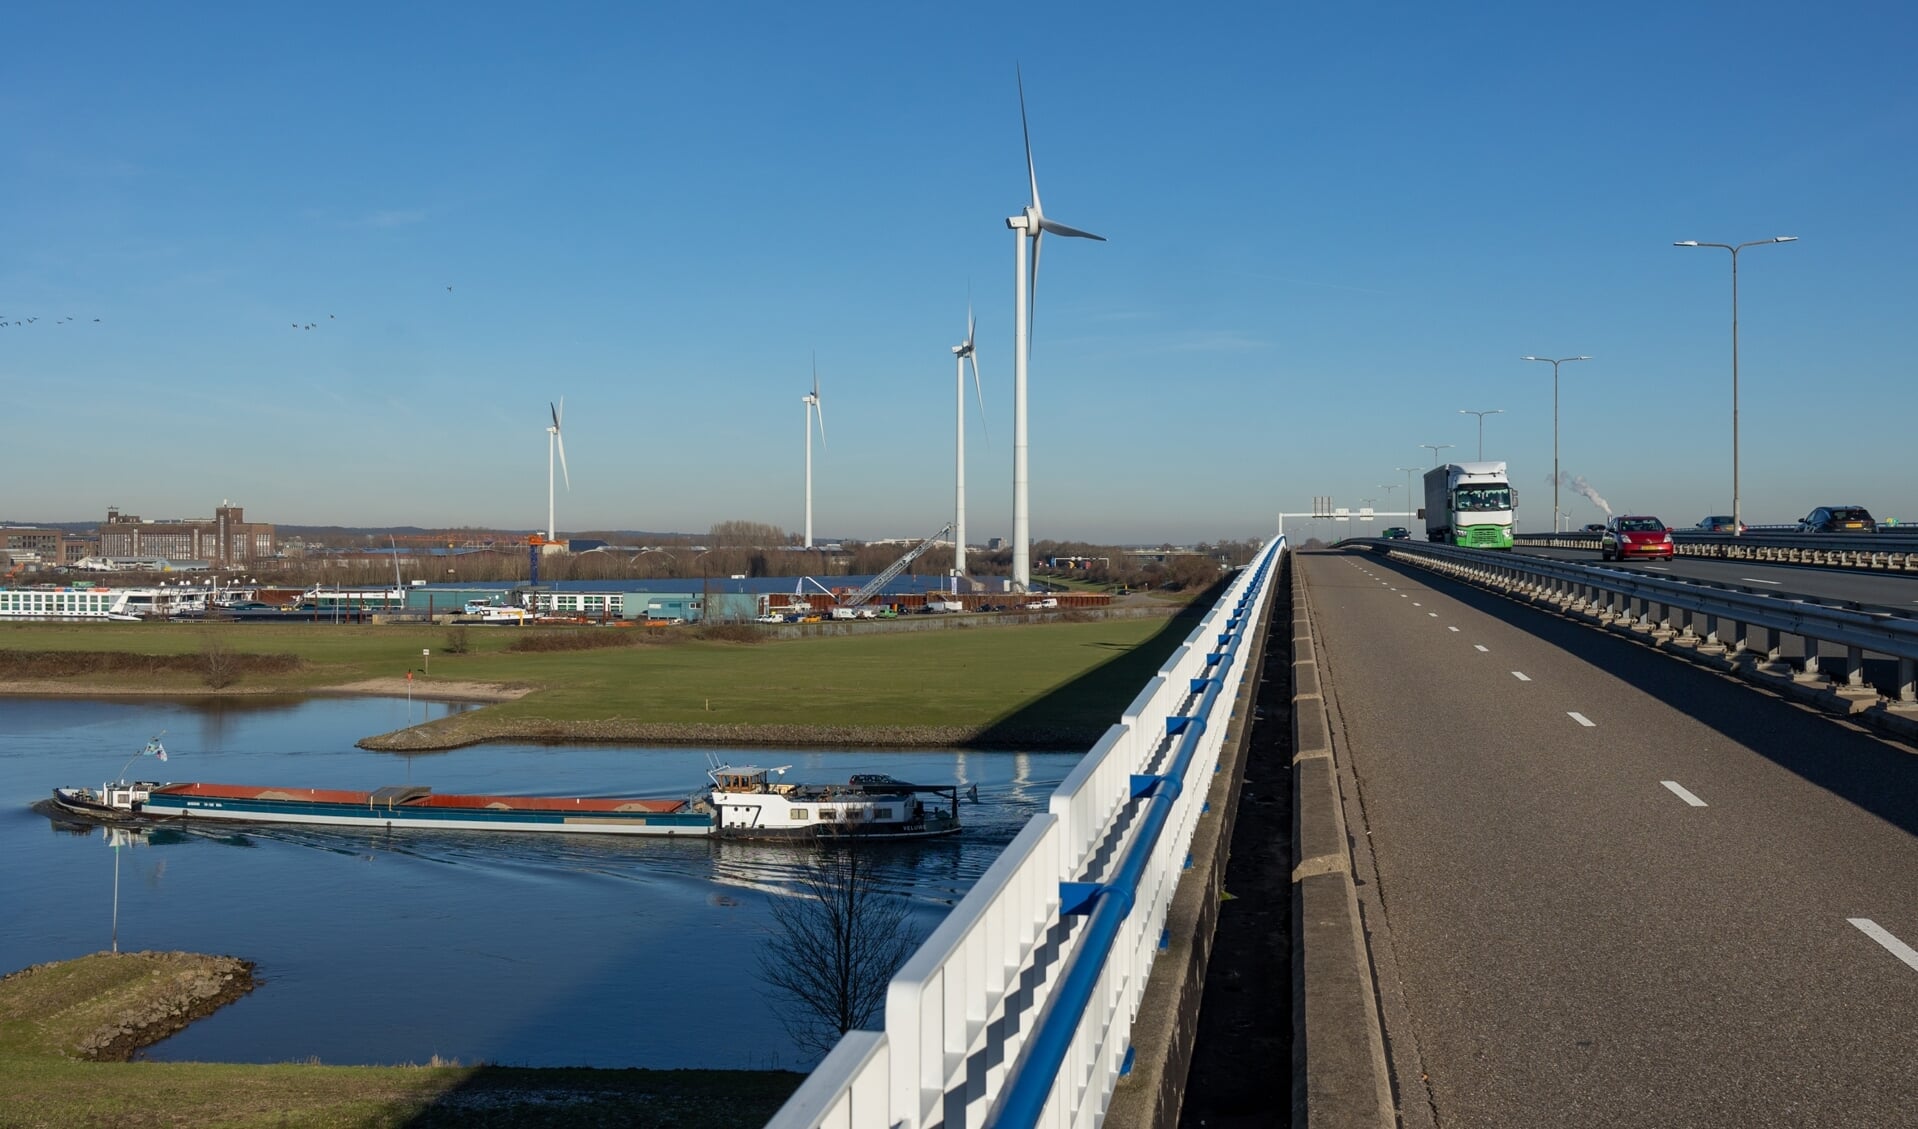 De vier turbines van Windpark Koningspleij langs de N325. 